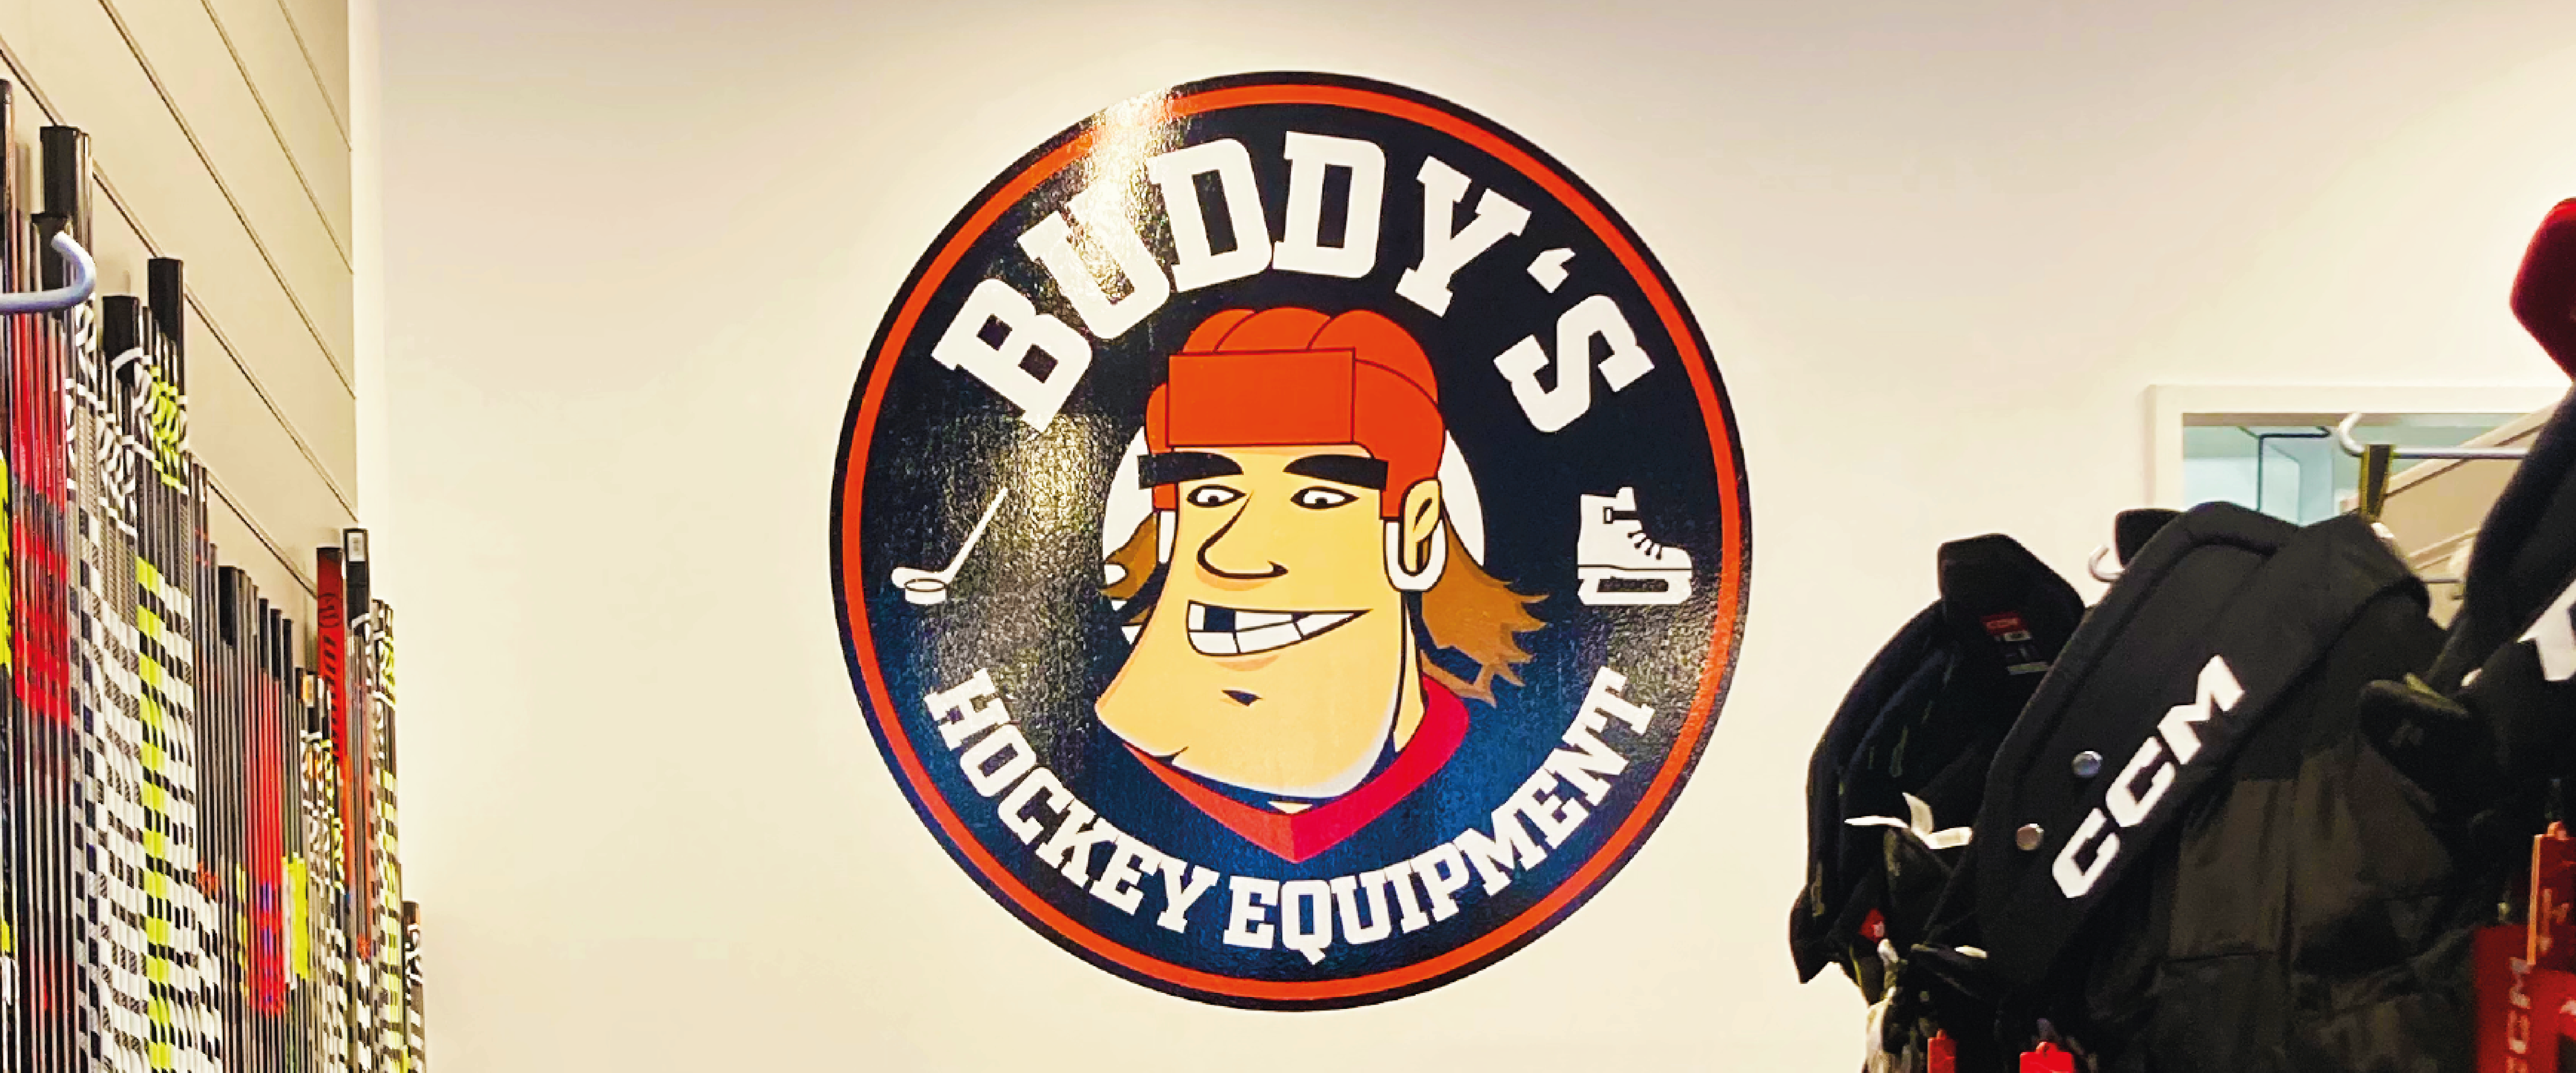 Buddys Hockey Equipment